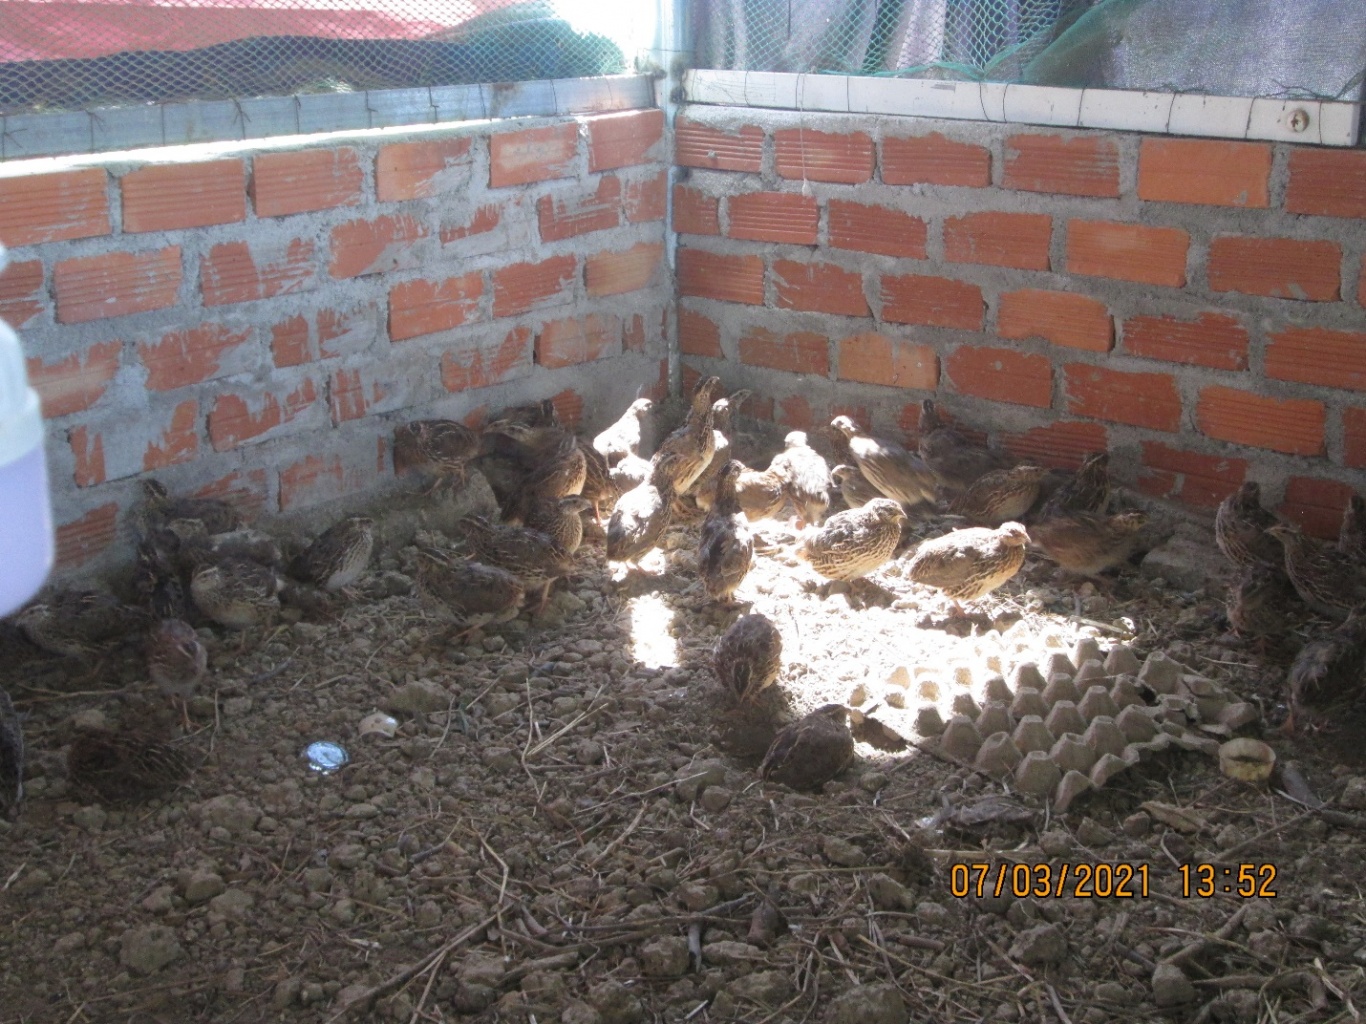 Trang trại nuôi chim cút an toàn - Nghề nông